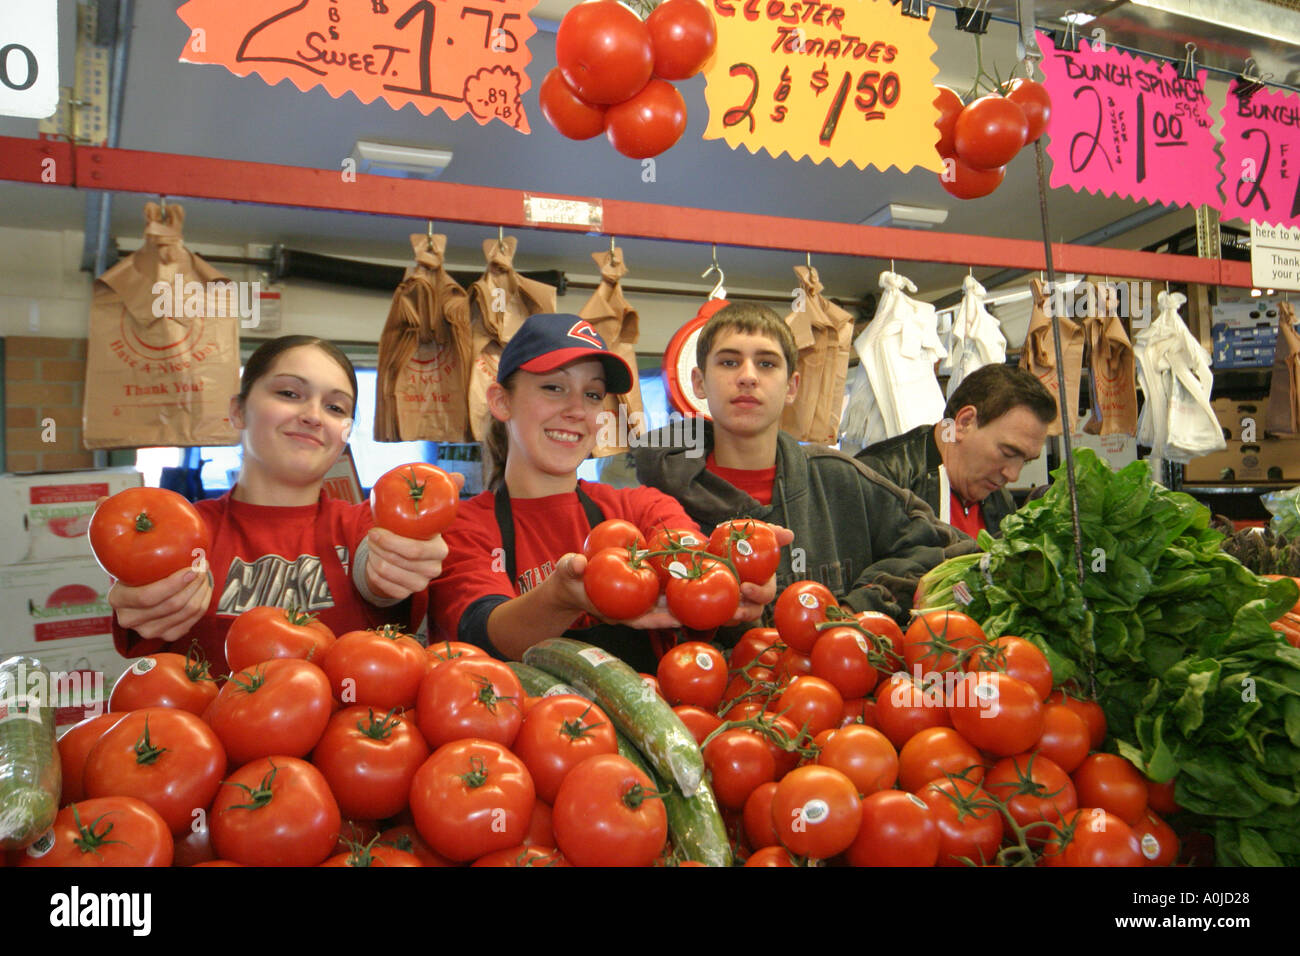 Cleveland Ohio, Westside Market, Marktplatz, Produkte, Obst, Gemüse, Gemüse, Lebensmittel, Produkte, Tomaten, Tomaten, Verkäuferverkäufer, Verkaufsstände Stand Stockfoto